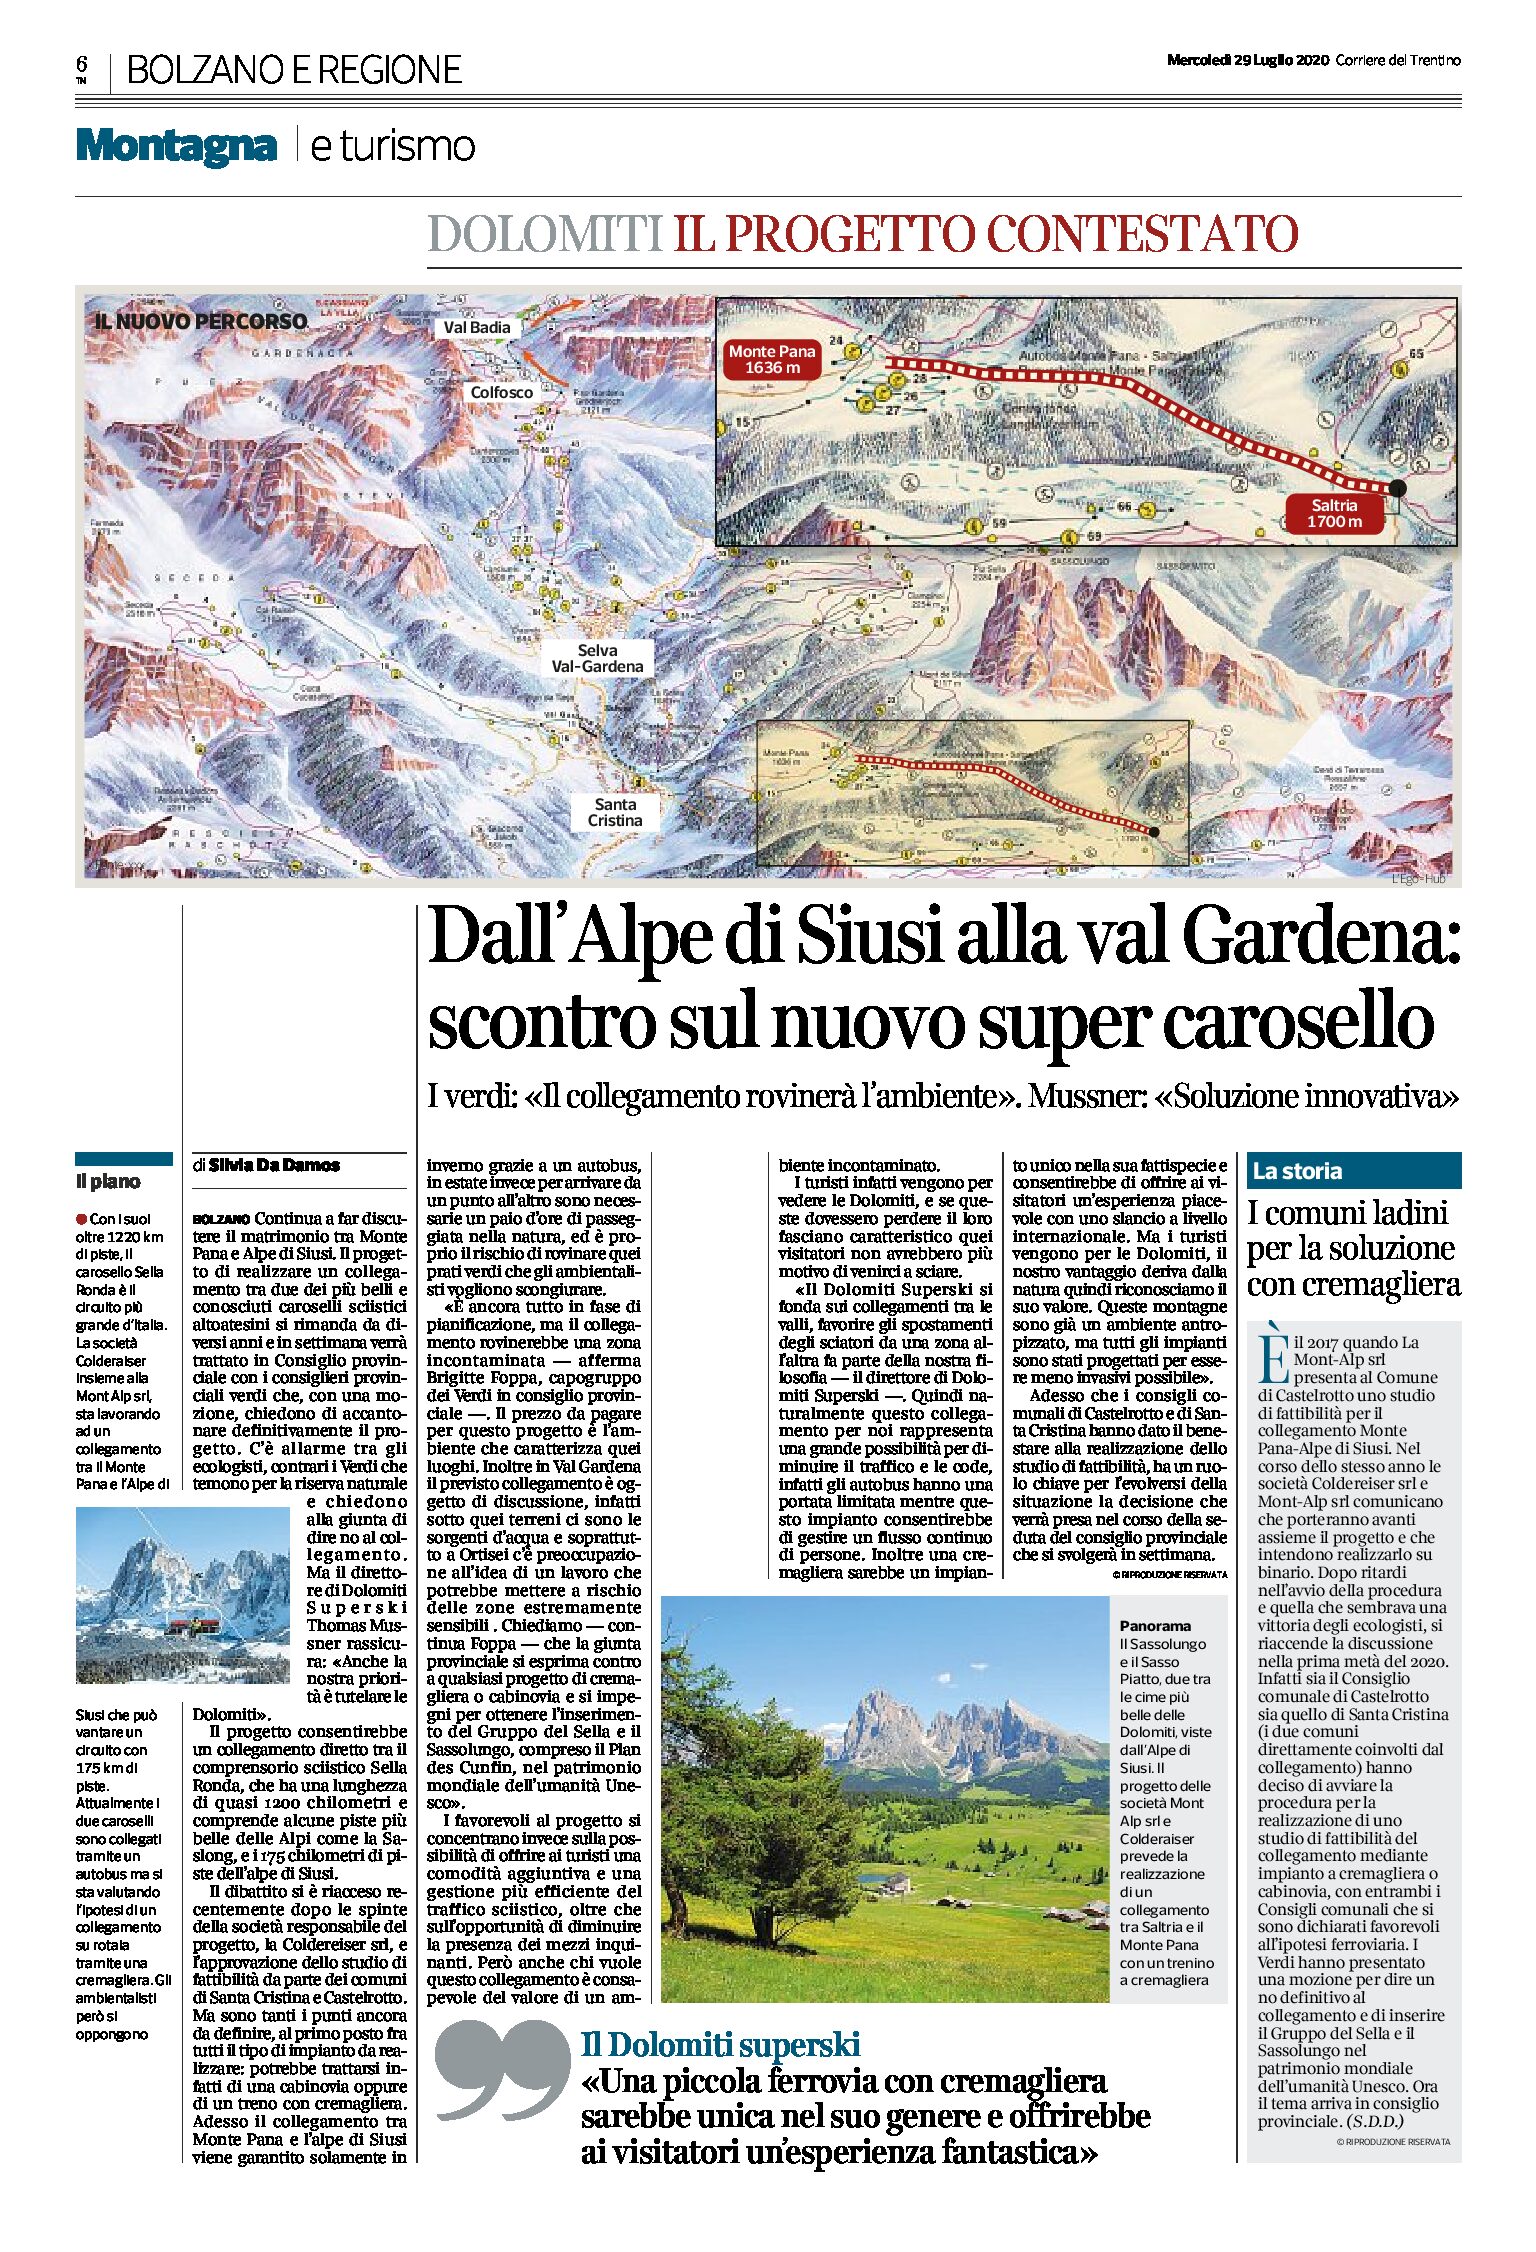 Dall’Alpe di Siusi alla val Gardena: scontro sul nuovo super carosello